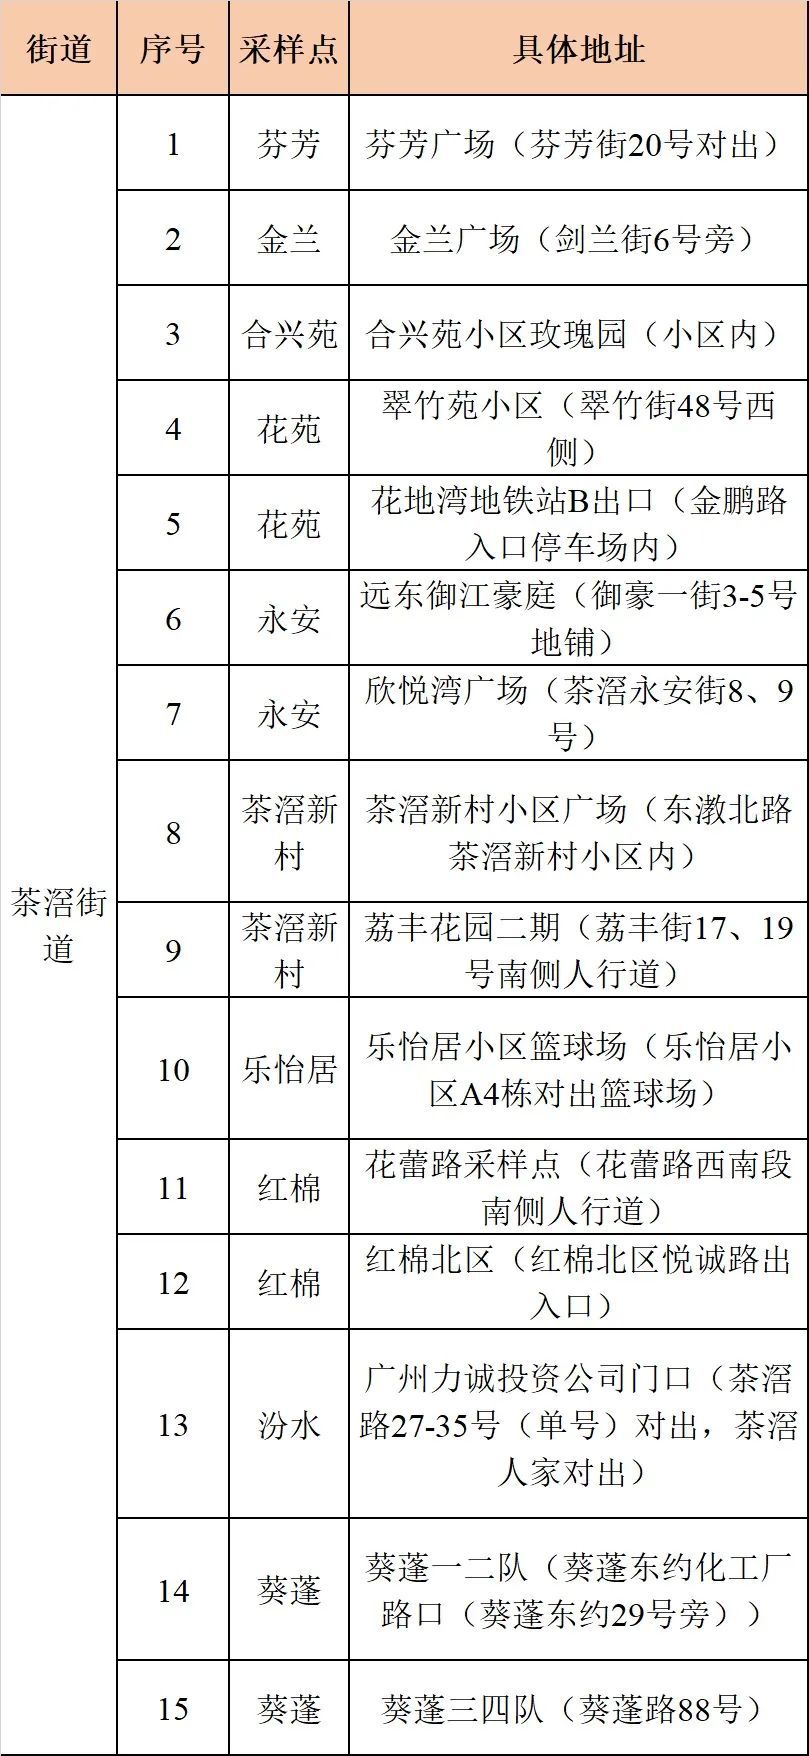 8月31日16-21时广州荔湾区茶滘街道启动全员核酸检测